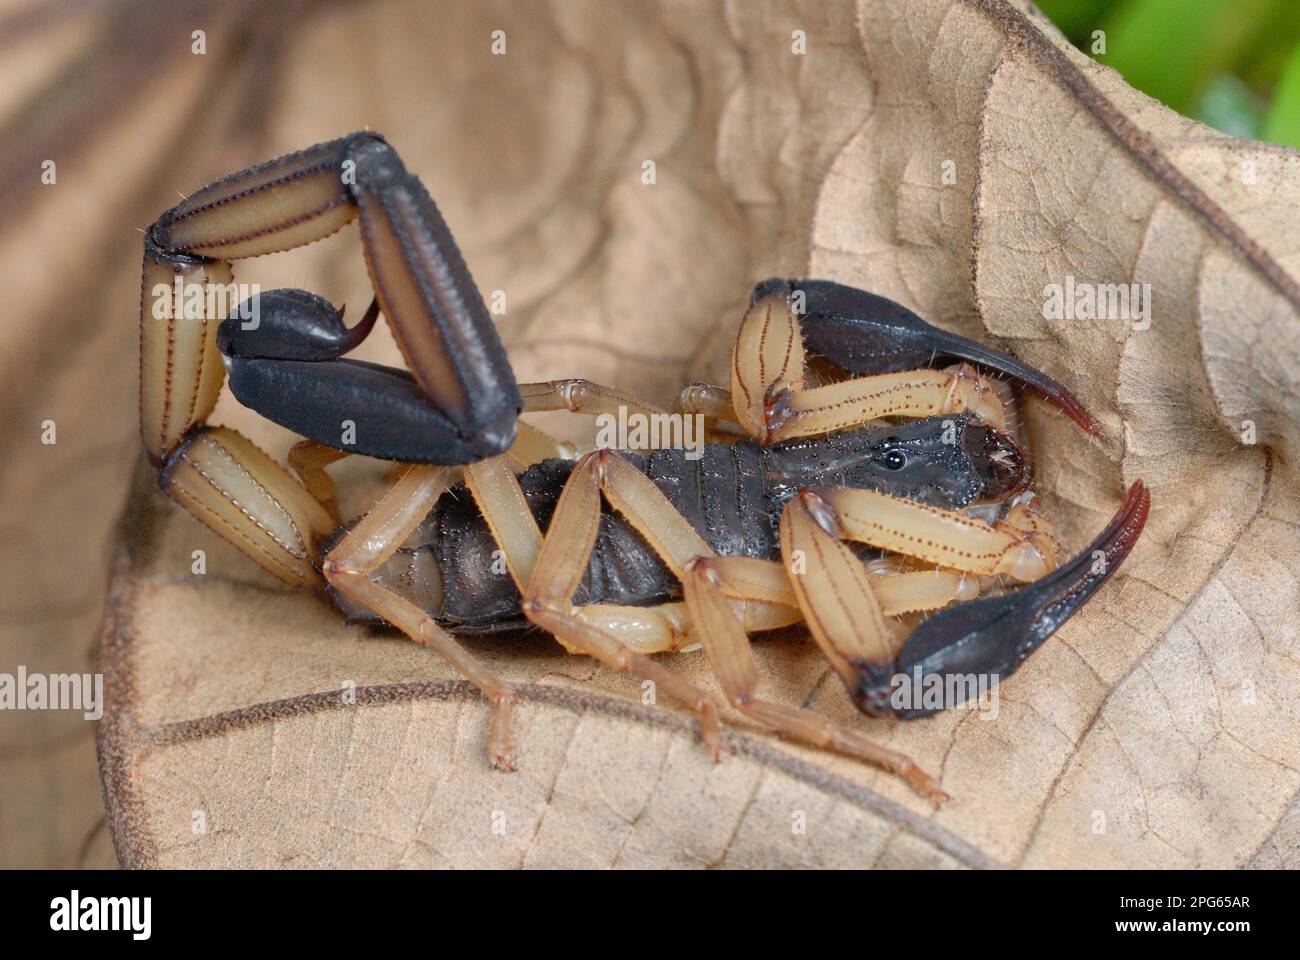 Bark à pincée noire Scorpion (Centruroides bicolor) adulte, reposant sur une feuille morte dans la forêt tropicale, péninsule de Corcovado N. P. Osa, province de Puntarenas Banque D'Images